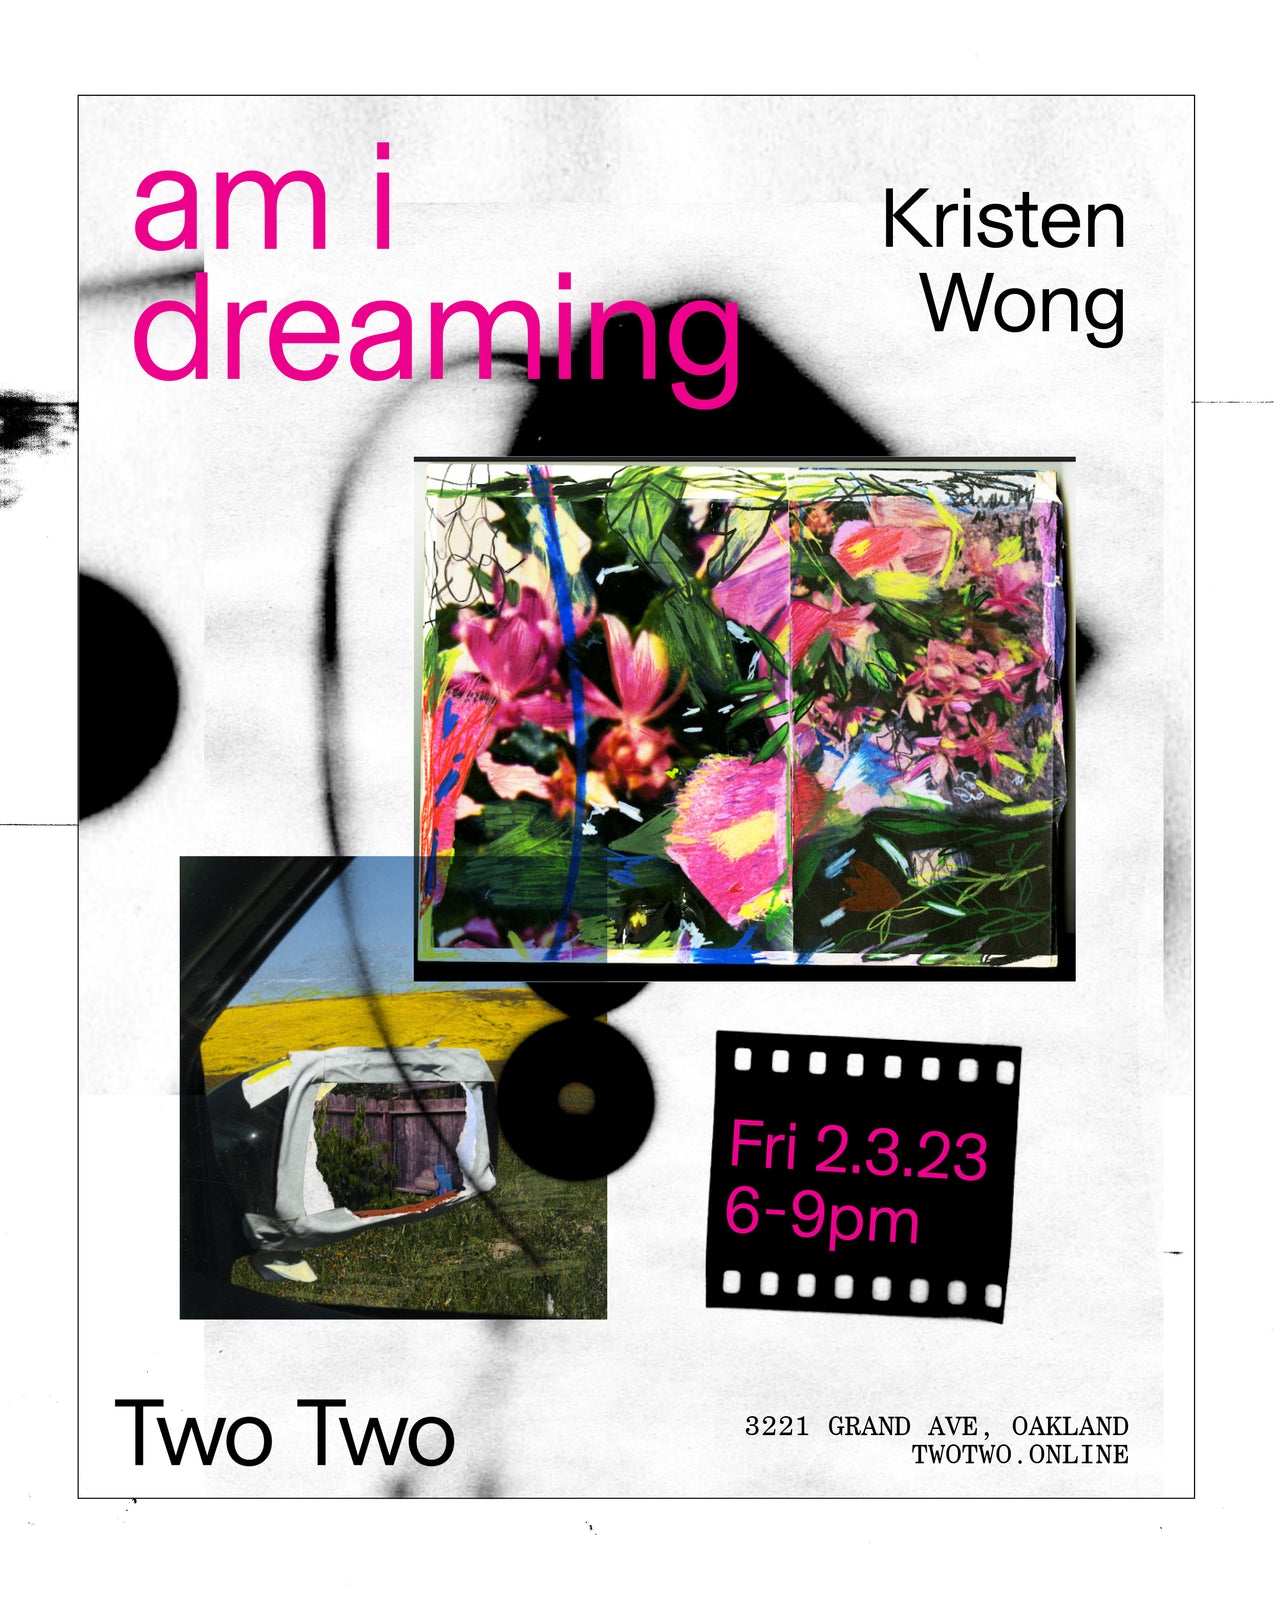 Kristen Wong "am i dreaming"